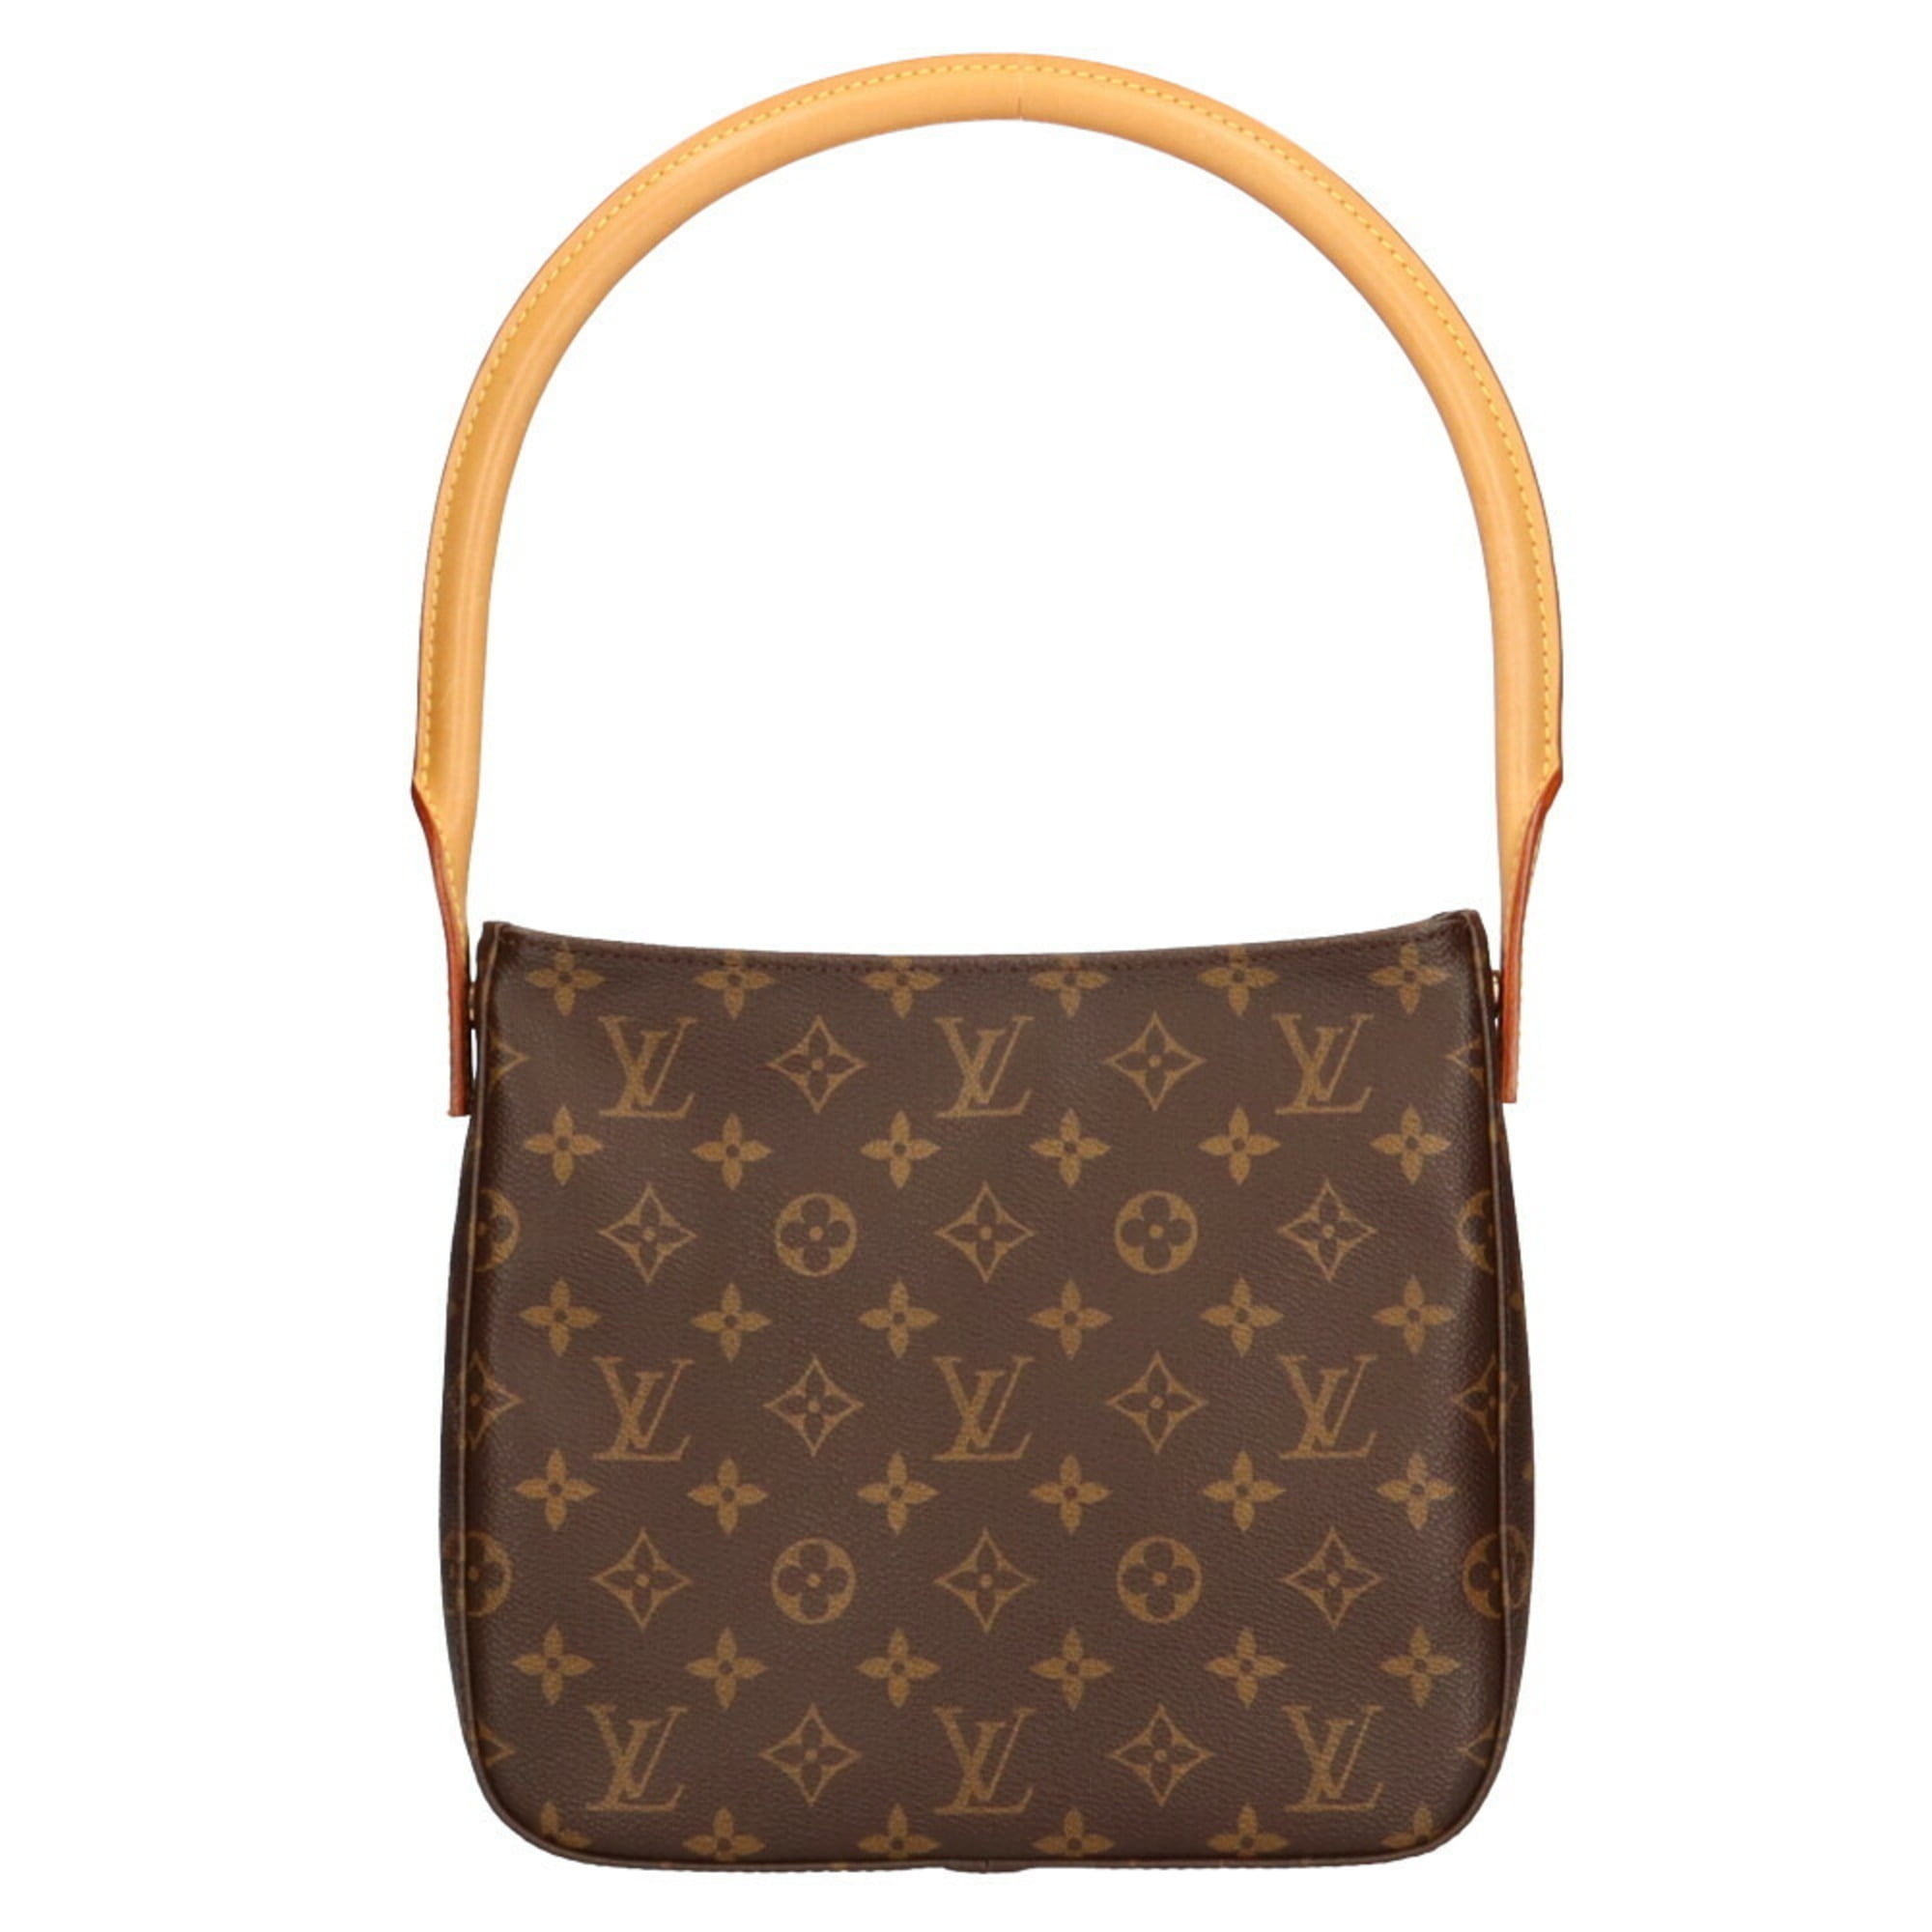 Authenticated used Louis Vuitton Louis Vuitton Looping mm Monogram Shoulder Bag Canvas Brown Women's, Adult Unisex, Size: (HxWxD): 21cm x 24cm x 10cm